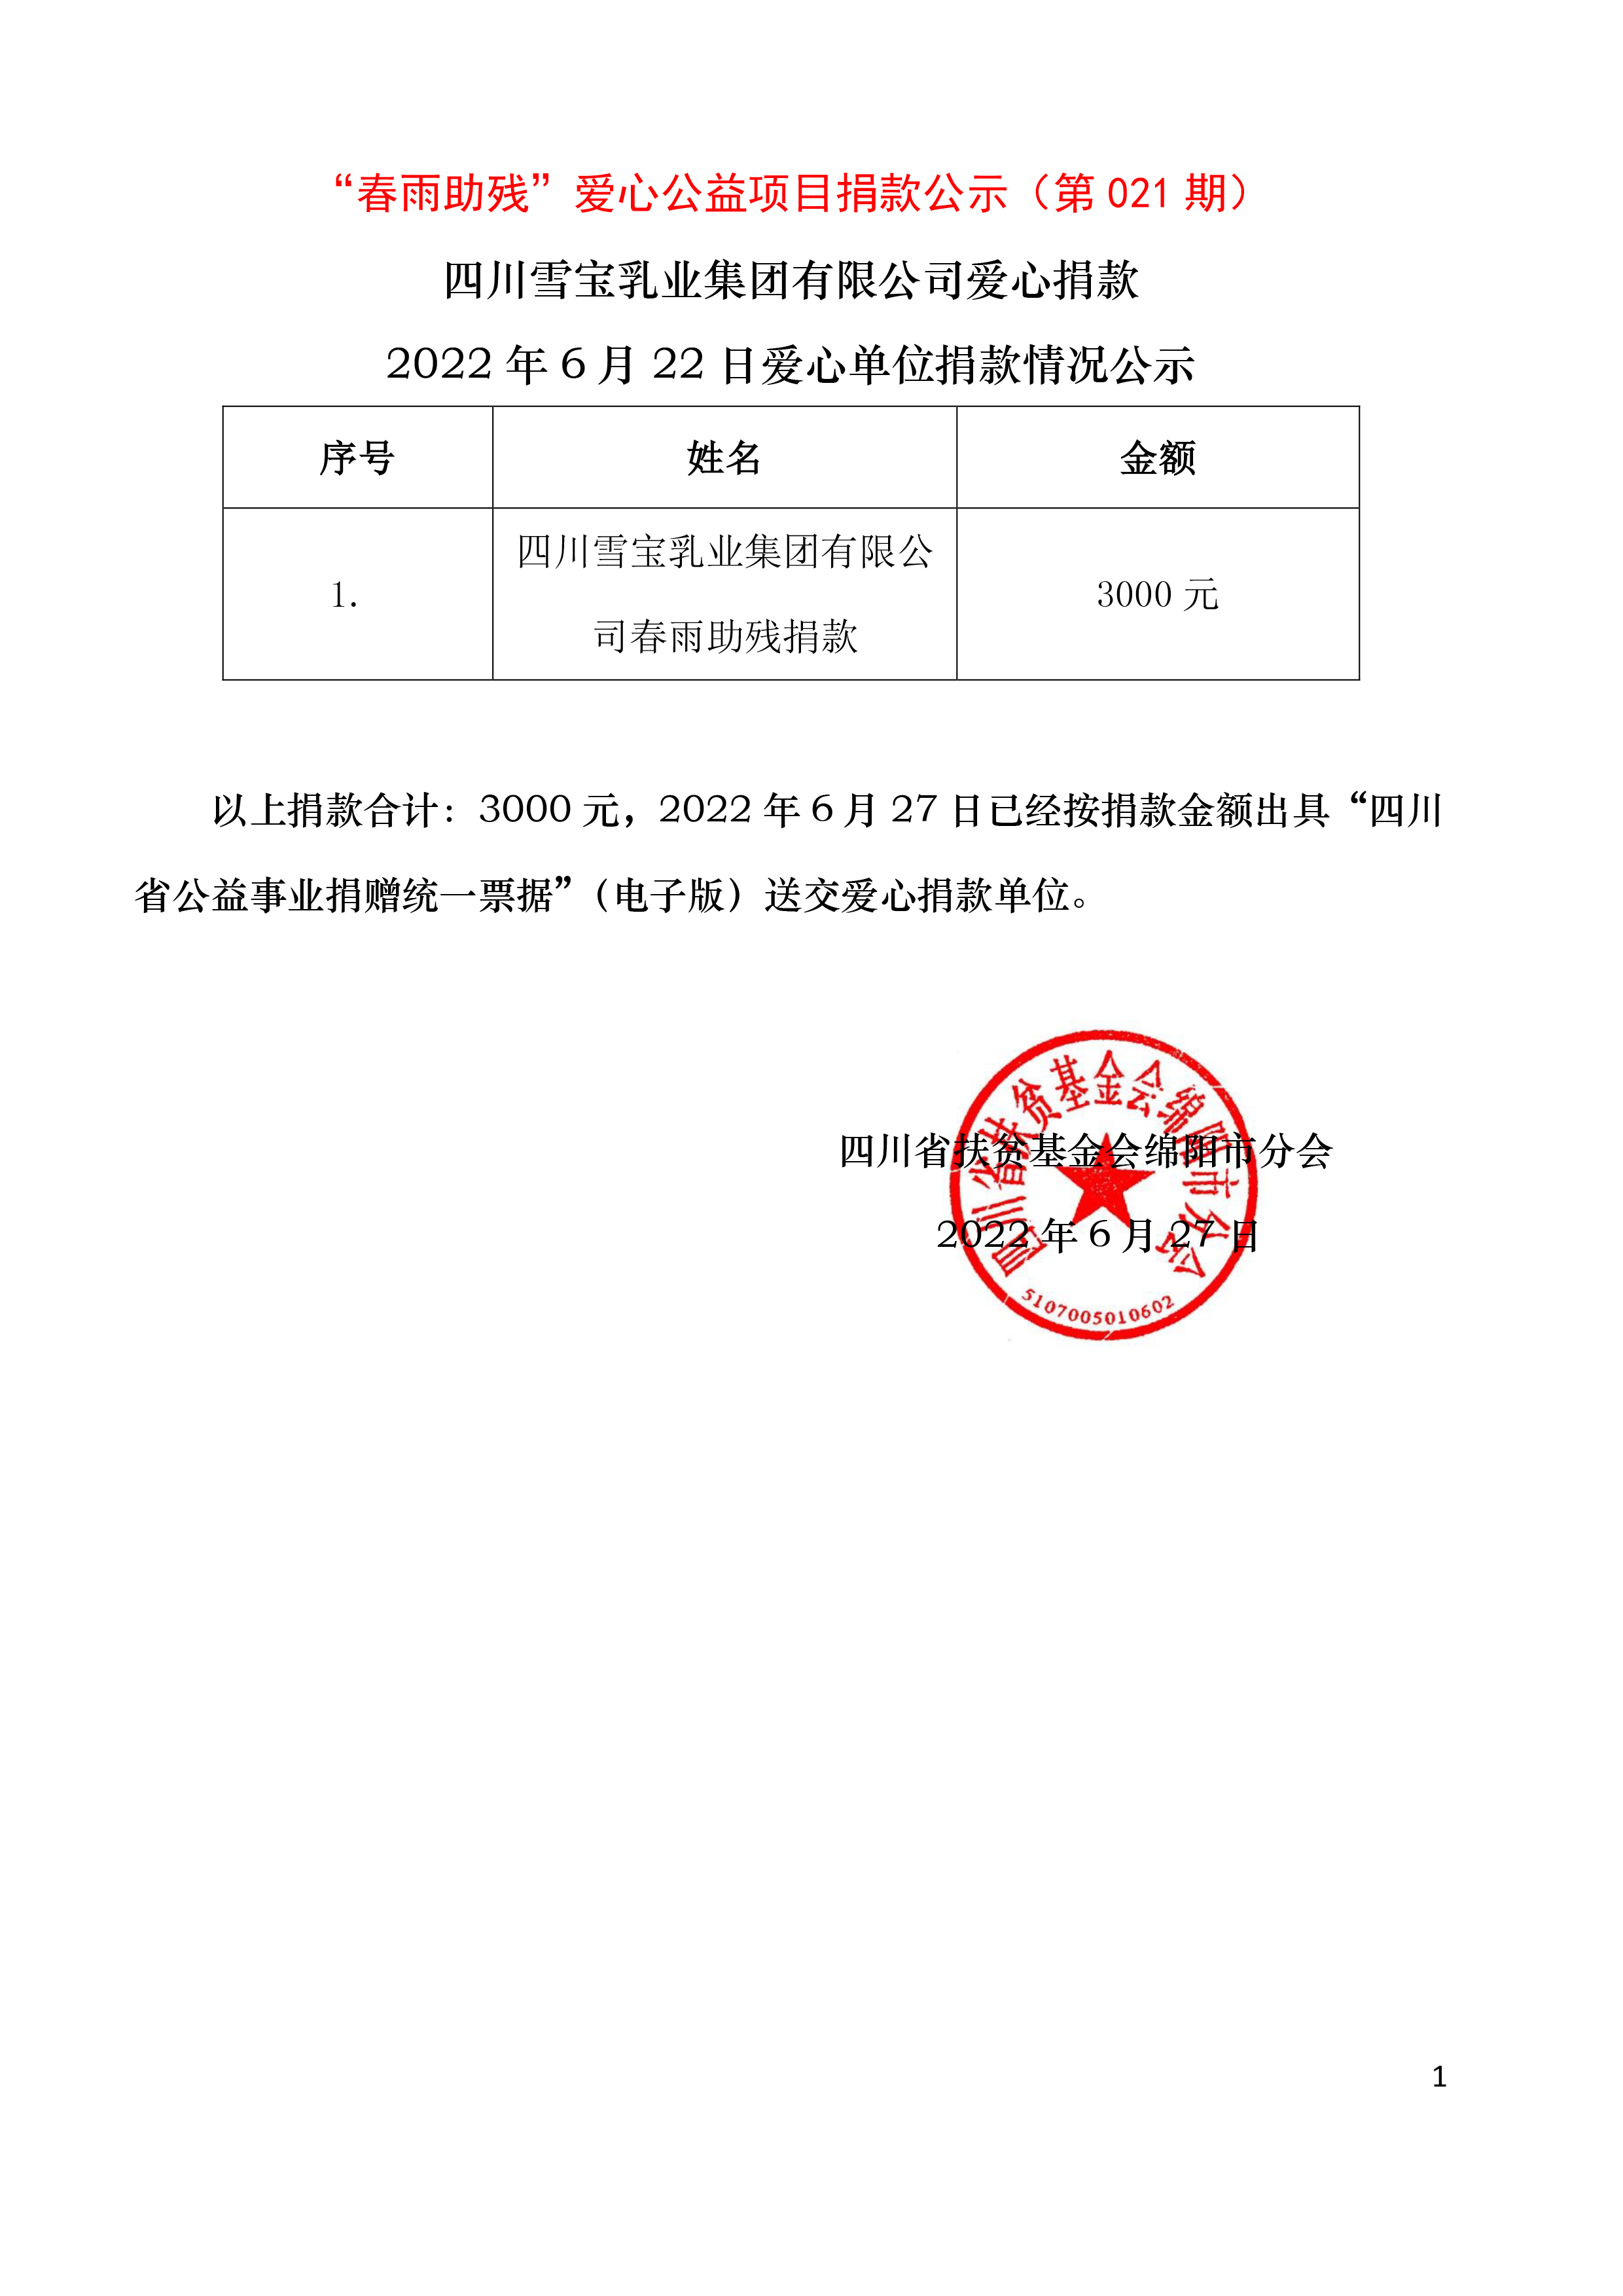 第021期-6月22日四川雪宝乳业集团有限公司捐款3000元情况公示.jpg